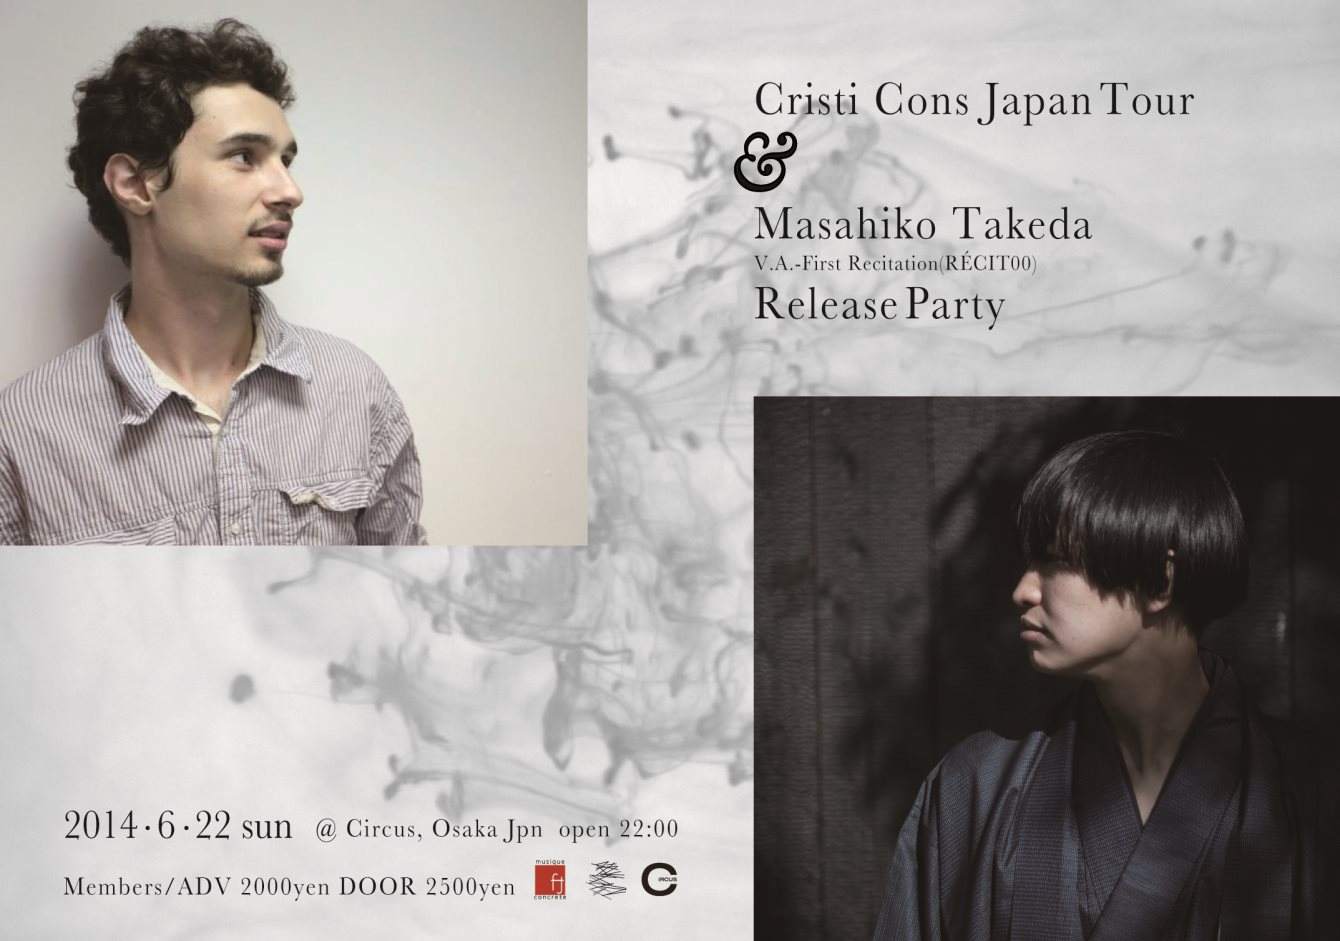 Cristi Cons Japan Tour & Masahiko Takeda Release Party - Página frontal